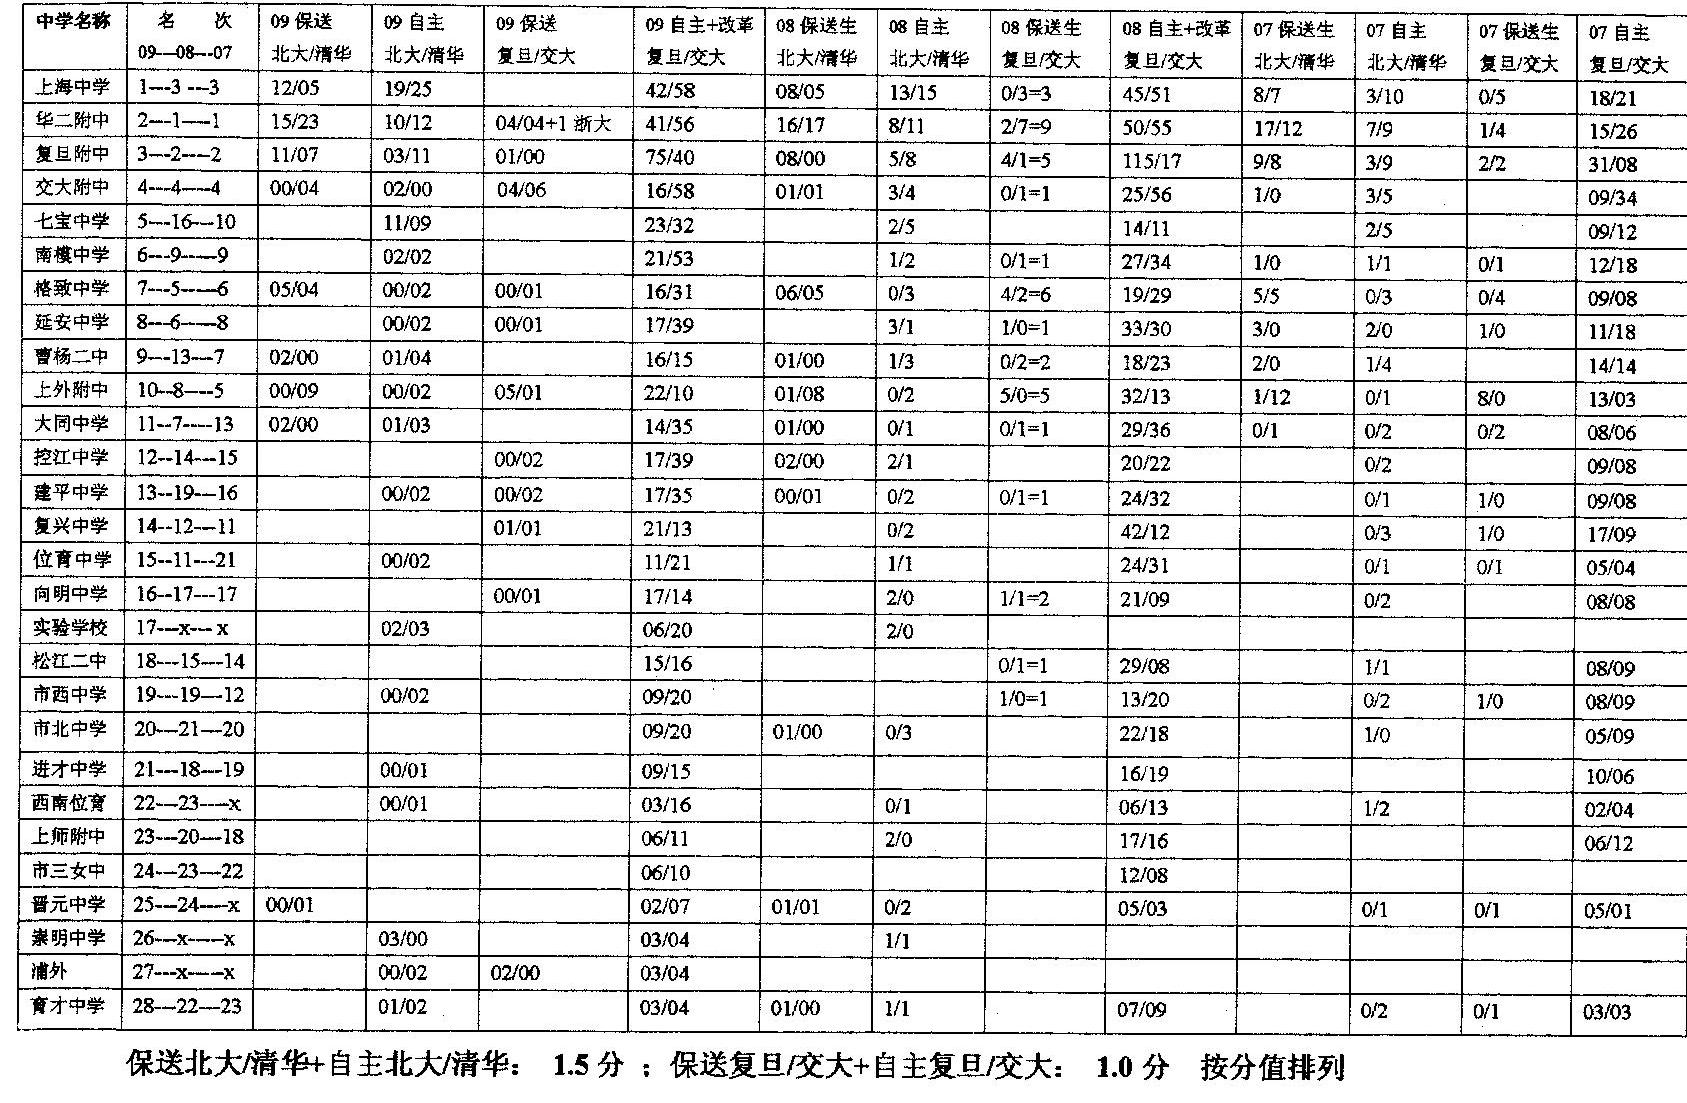 07 08 09 上海高中数据.jpg